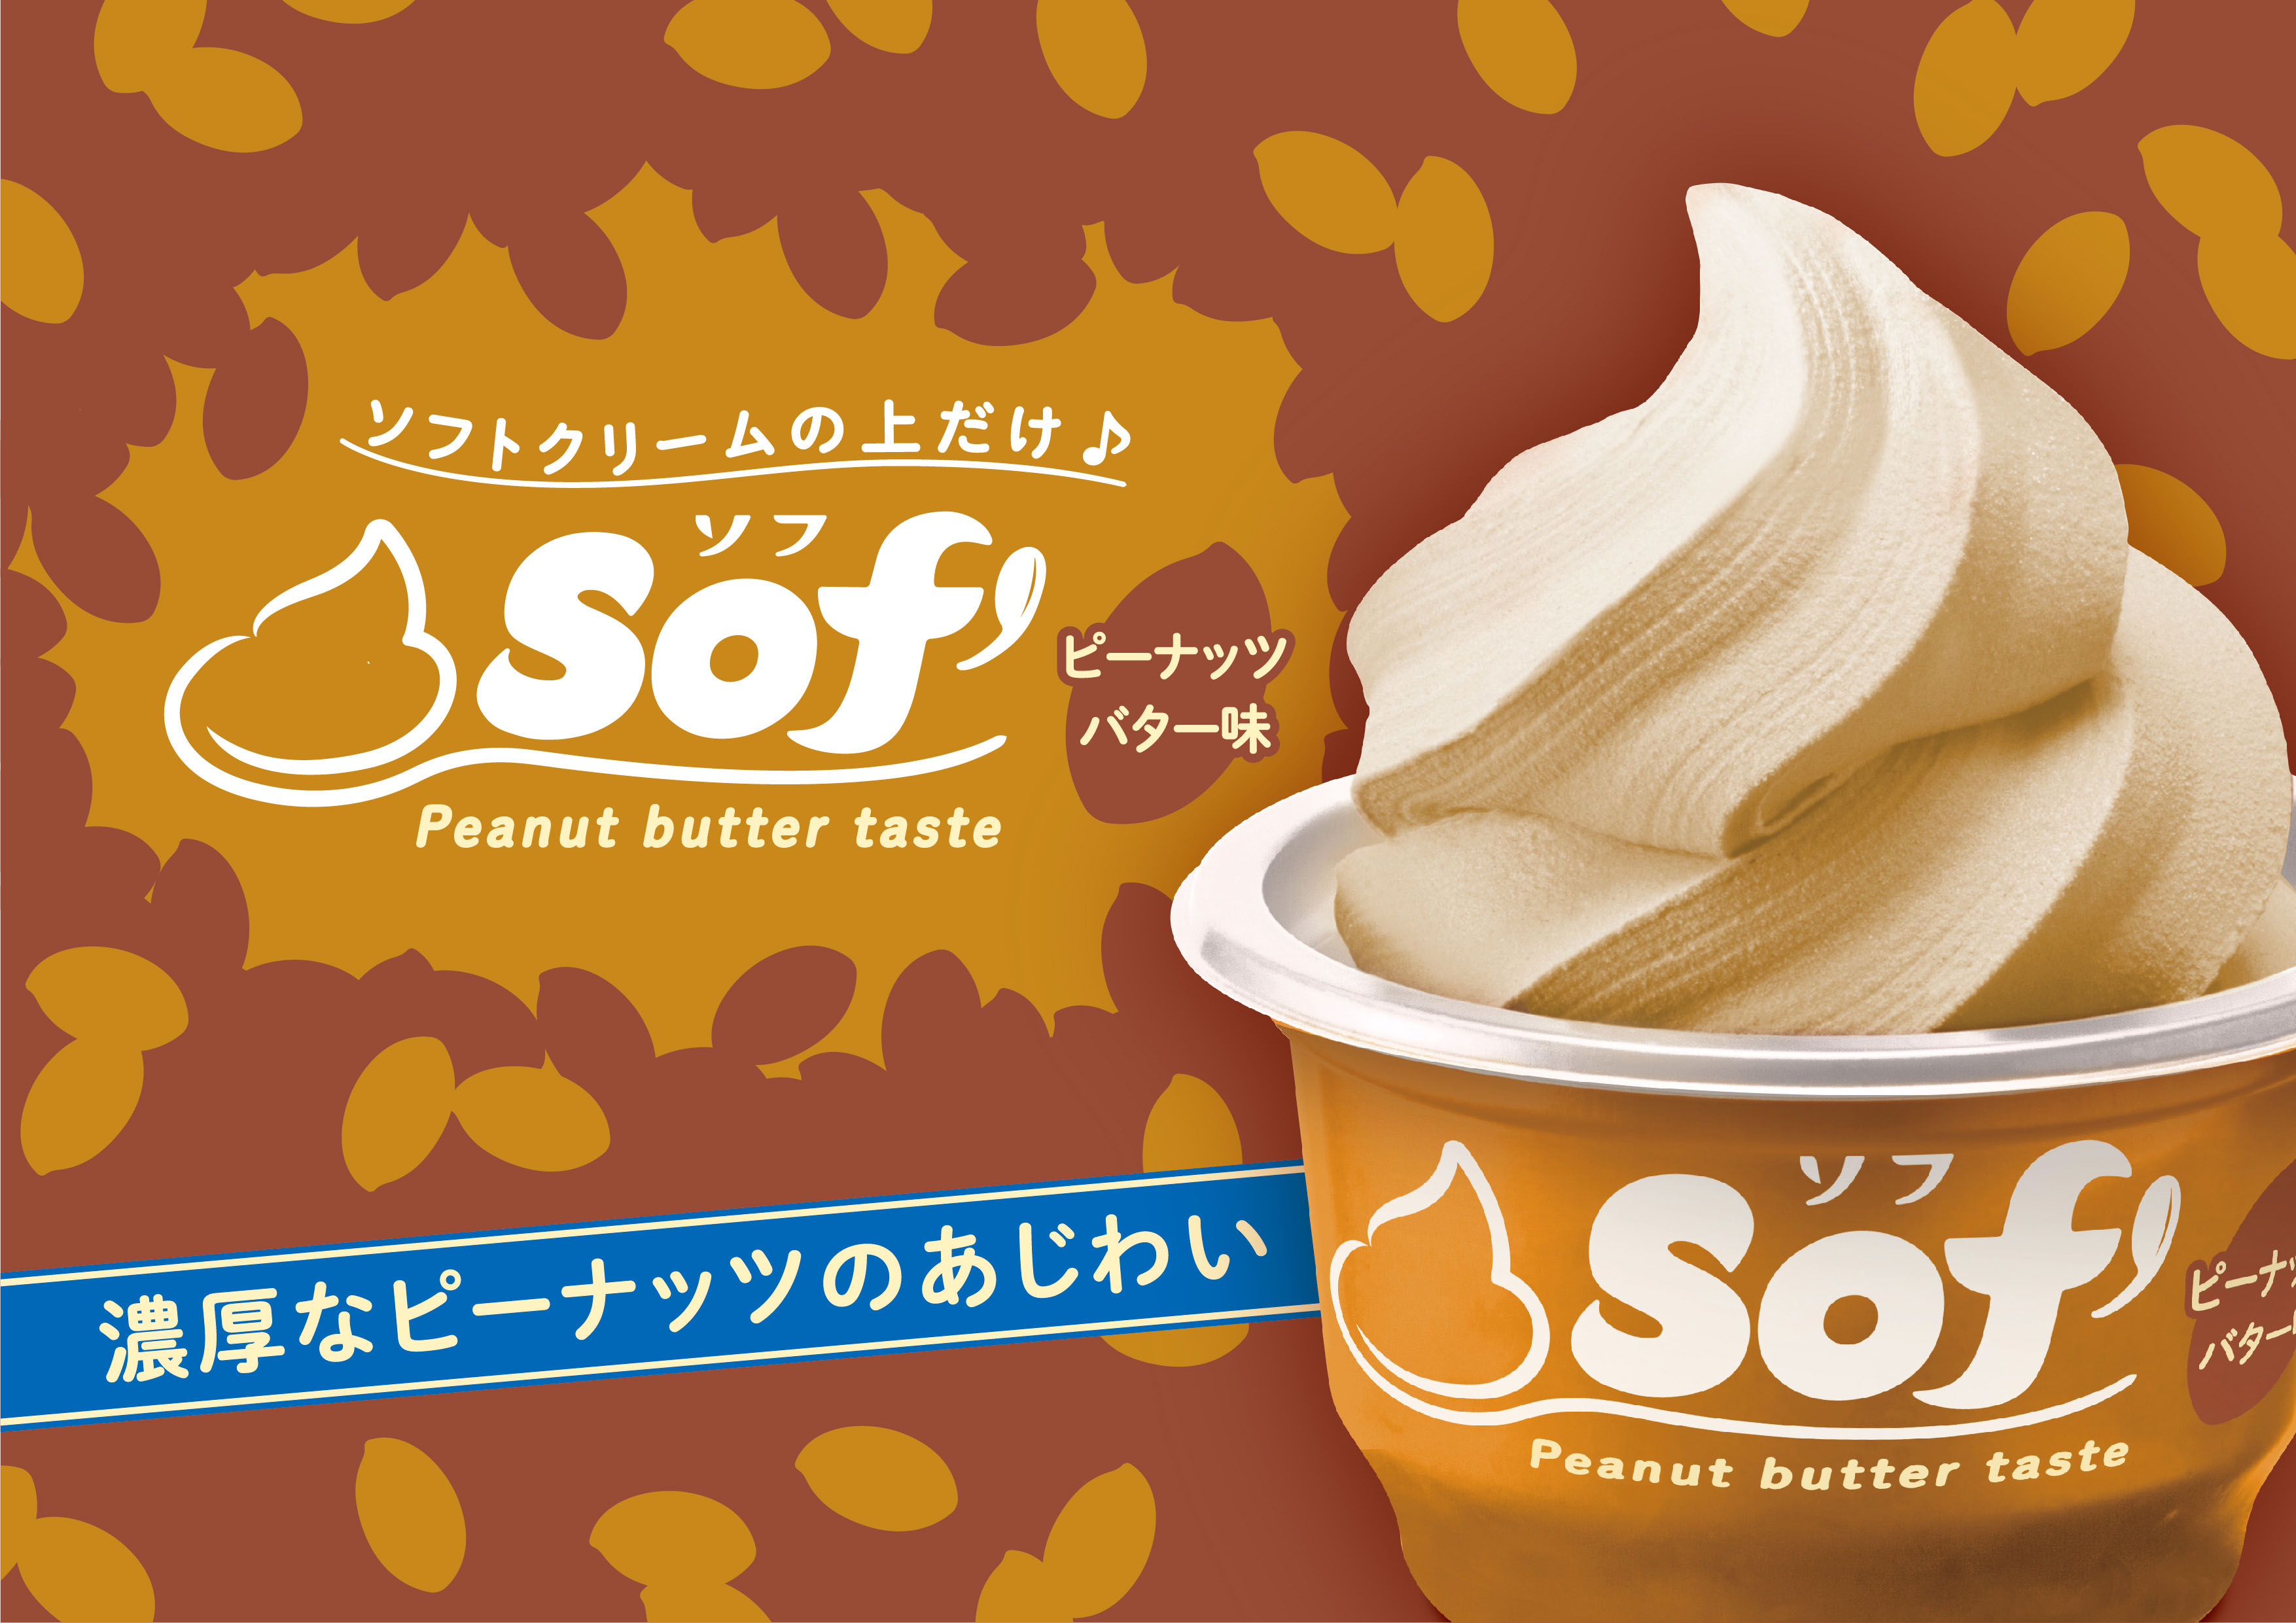 口に広がる 甘さとコク深い味わい Sof ソフ ピーナッツバター味 発売 赤城乳業株式会社のプレスリリース